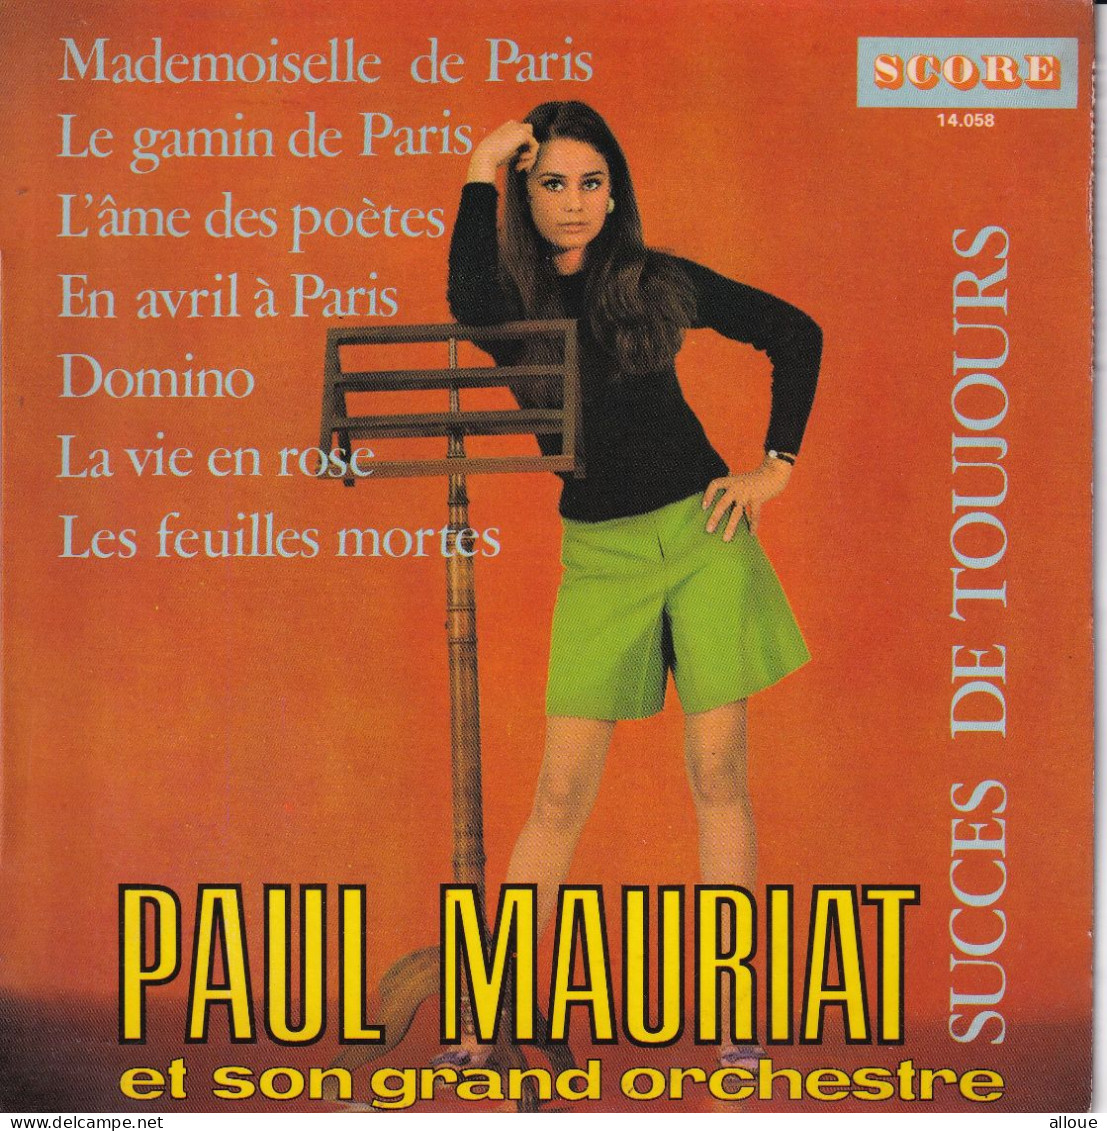 PAUL MAURIAT - SUCCES DE TOUJOURS - FR EP - MADEMOISELLE DE PARIS + 6 - Instrumental